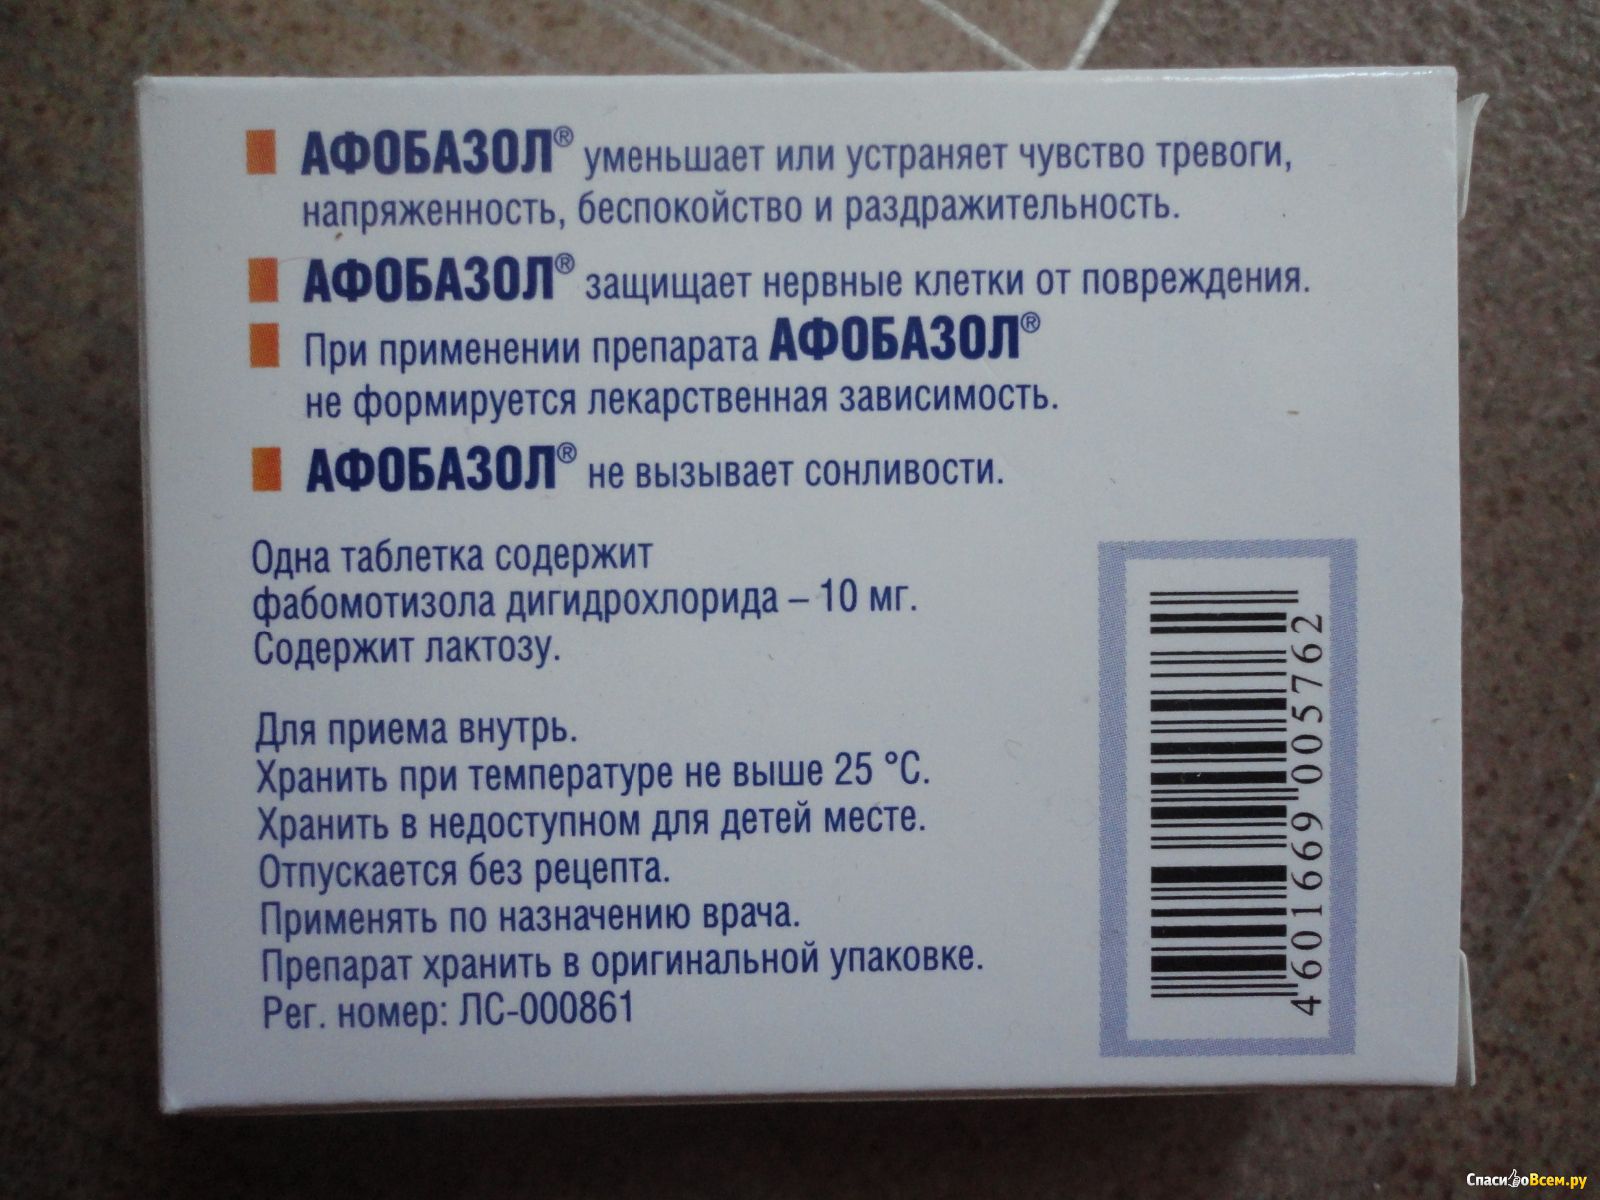 Афобазол отзывы после применения. Успокоительное Афобазол. Успокаивающие таблетки Афобазол. Афобазол снижает давление и пульс. От чего таблетки Афобазол.